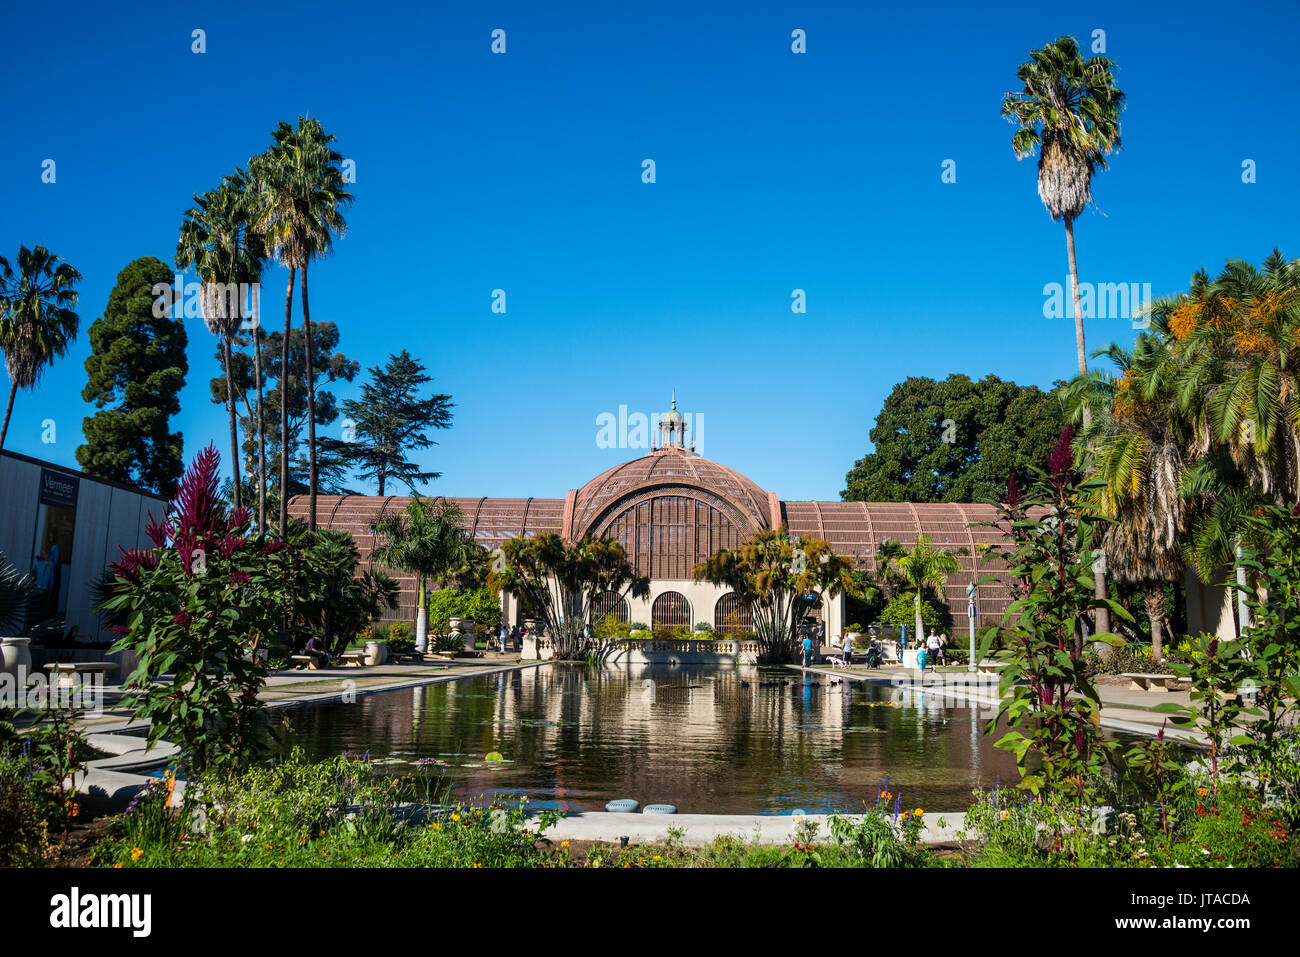 Edificio botanico, il Parco Balboa, San Diego, California, Stati Uniti d'America, America del Nord Foto Stock